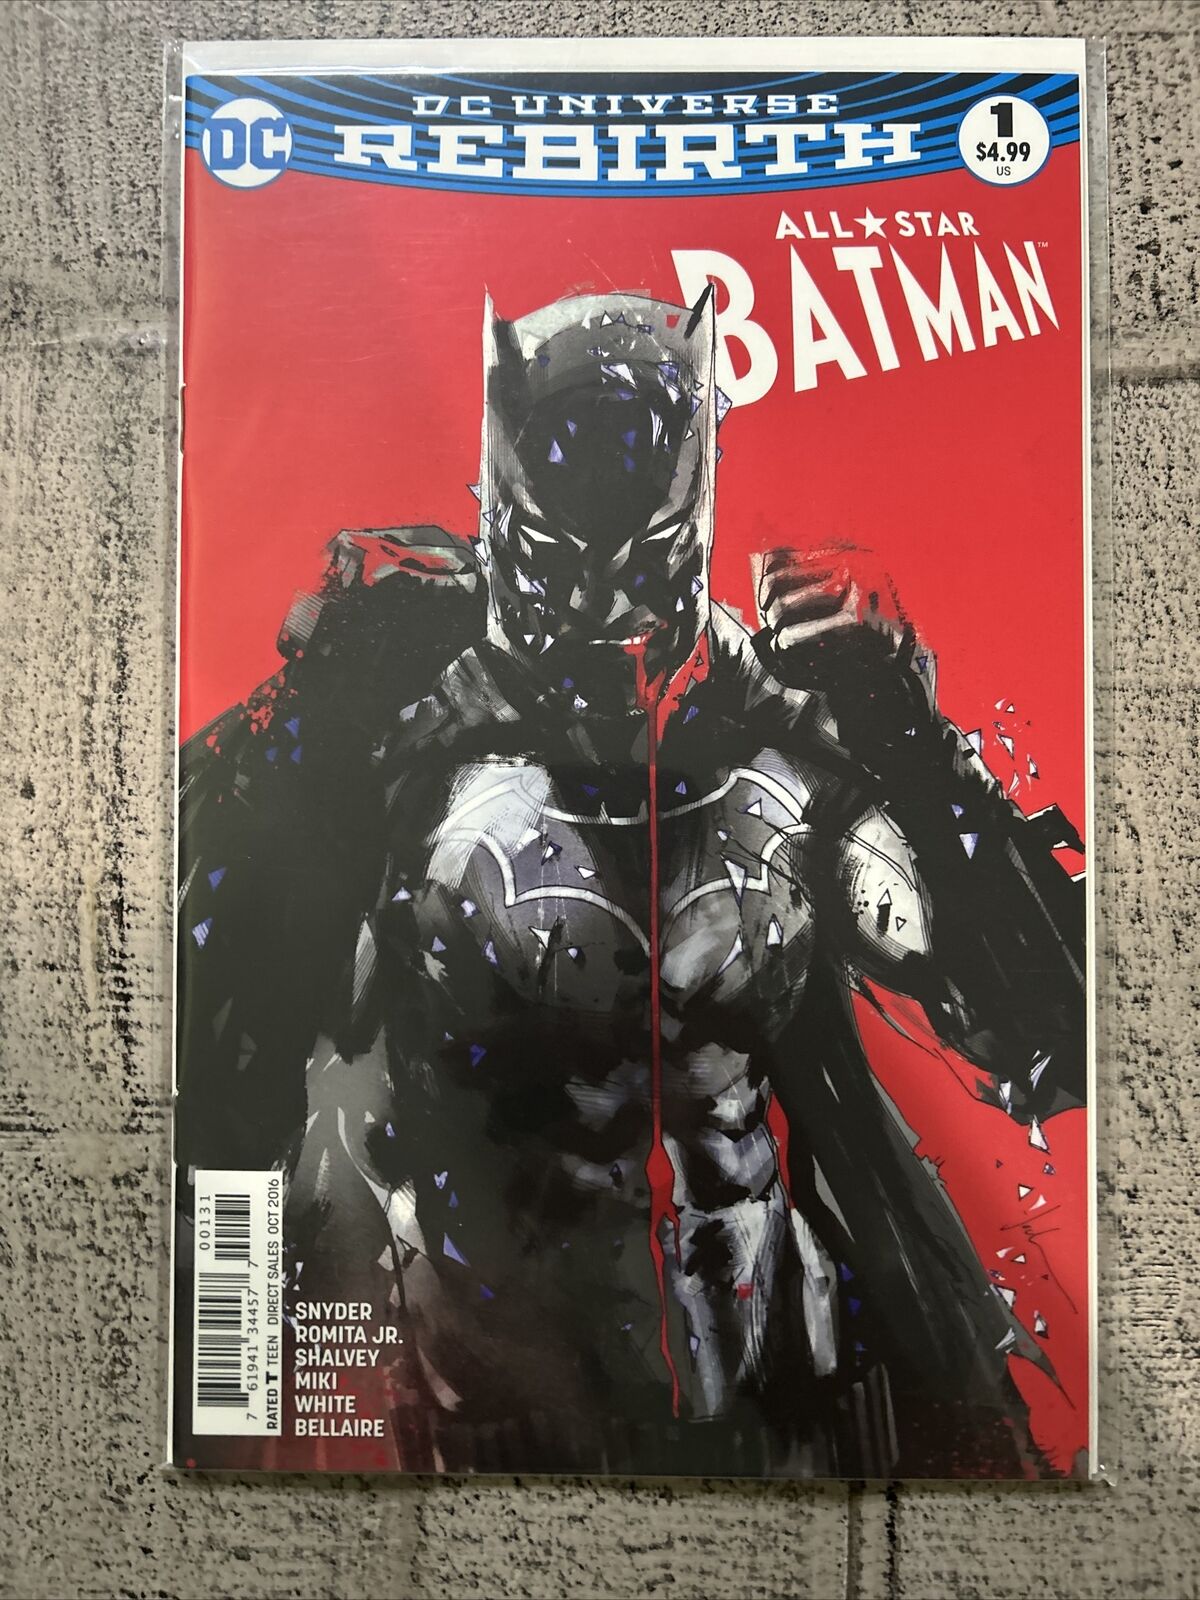 All Star Batman #1 Jock Variant Cover Variant (DC Comics October 2016)